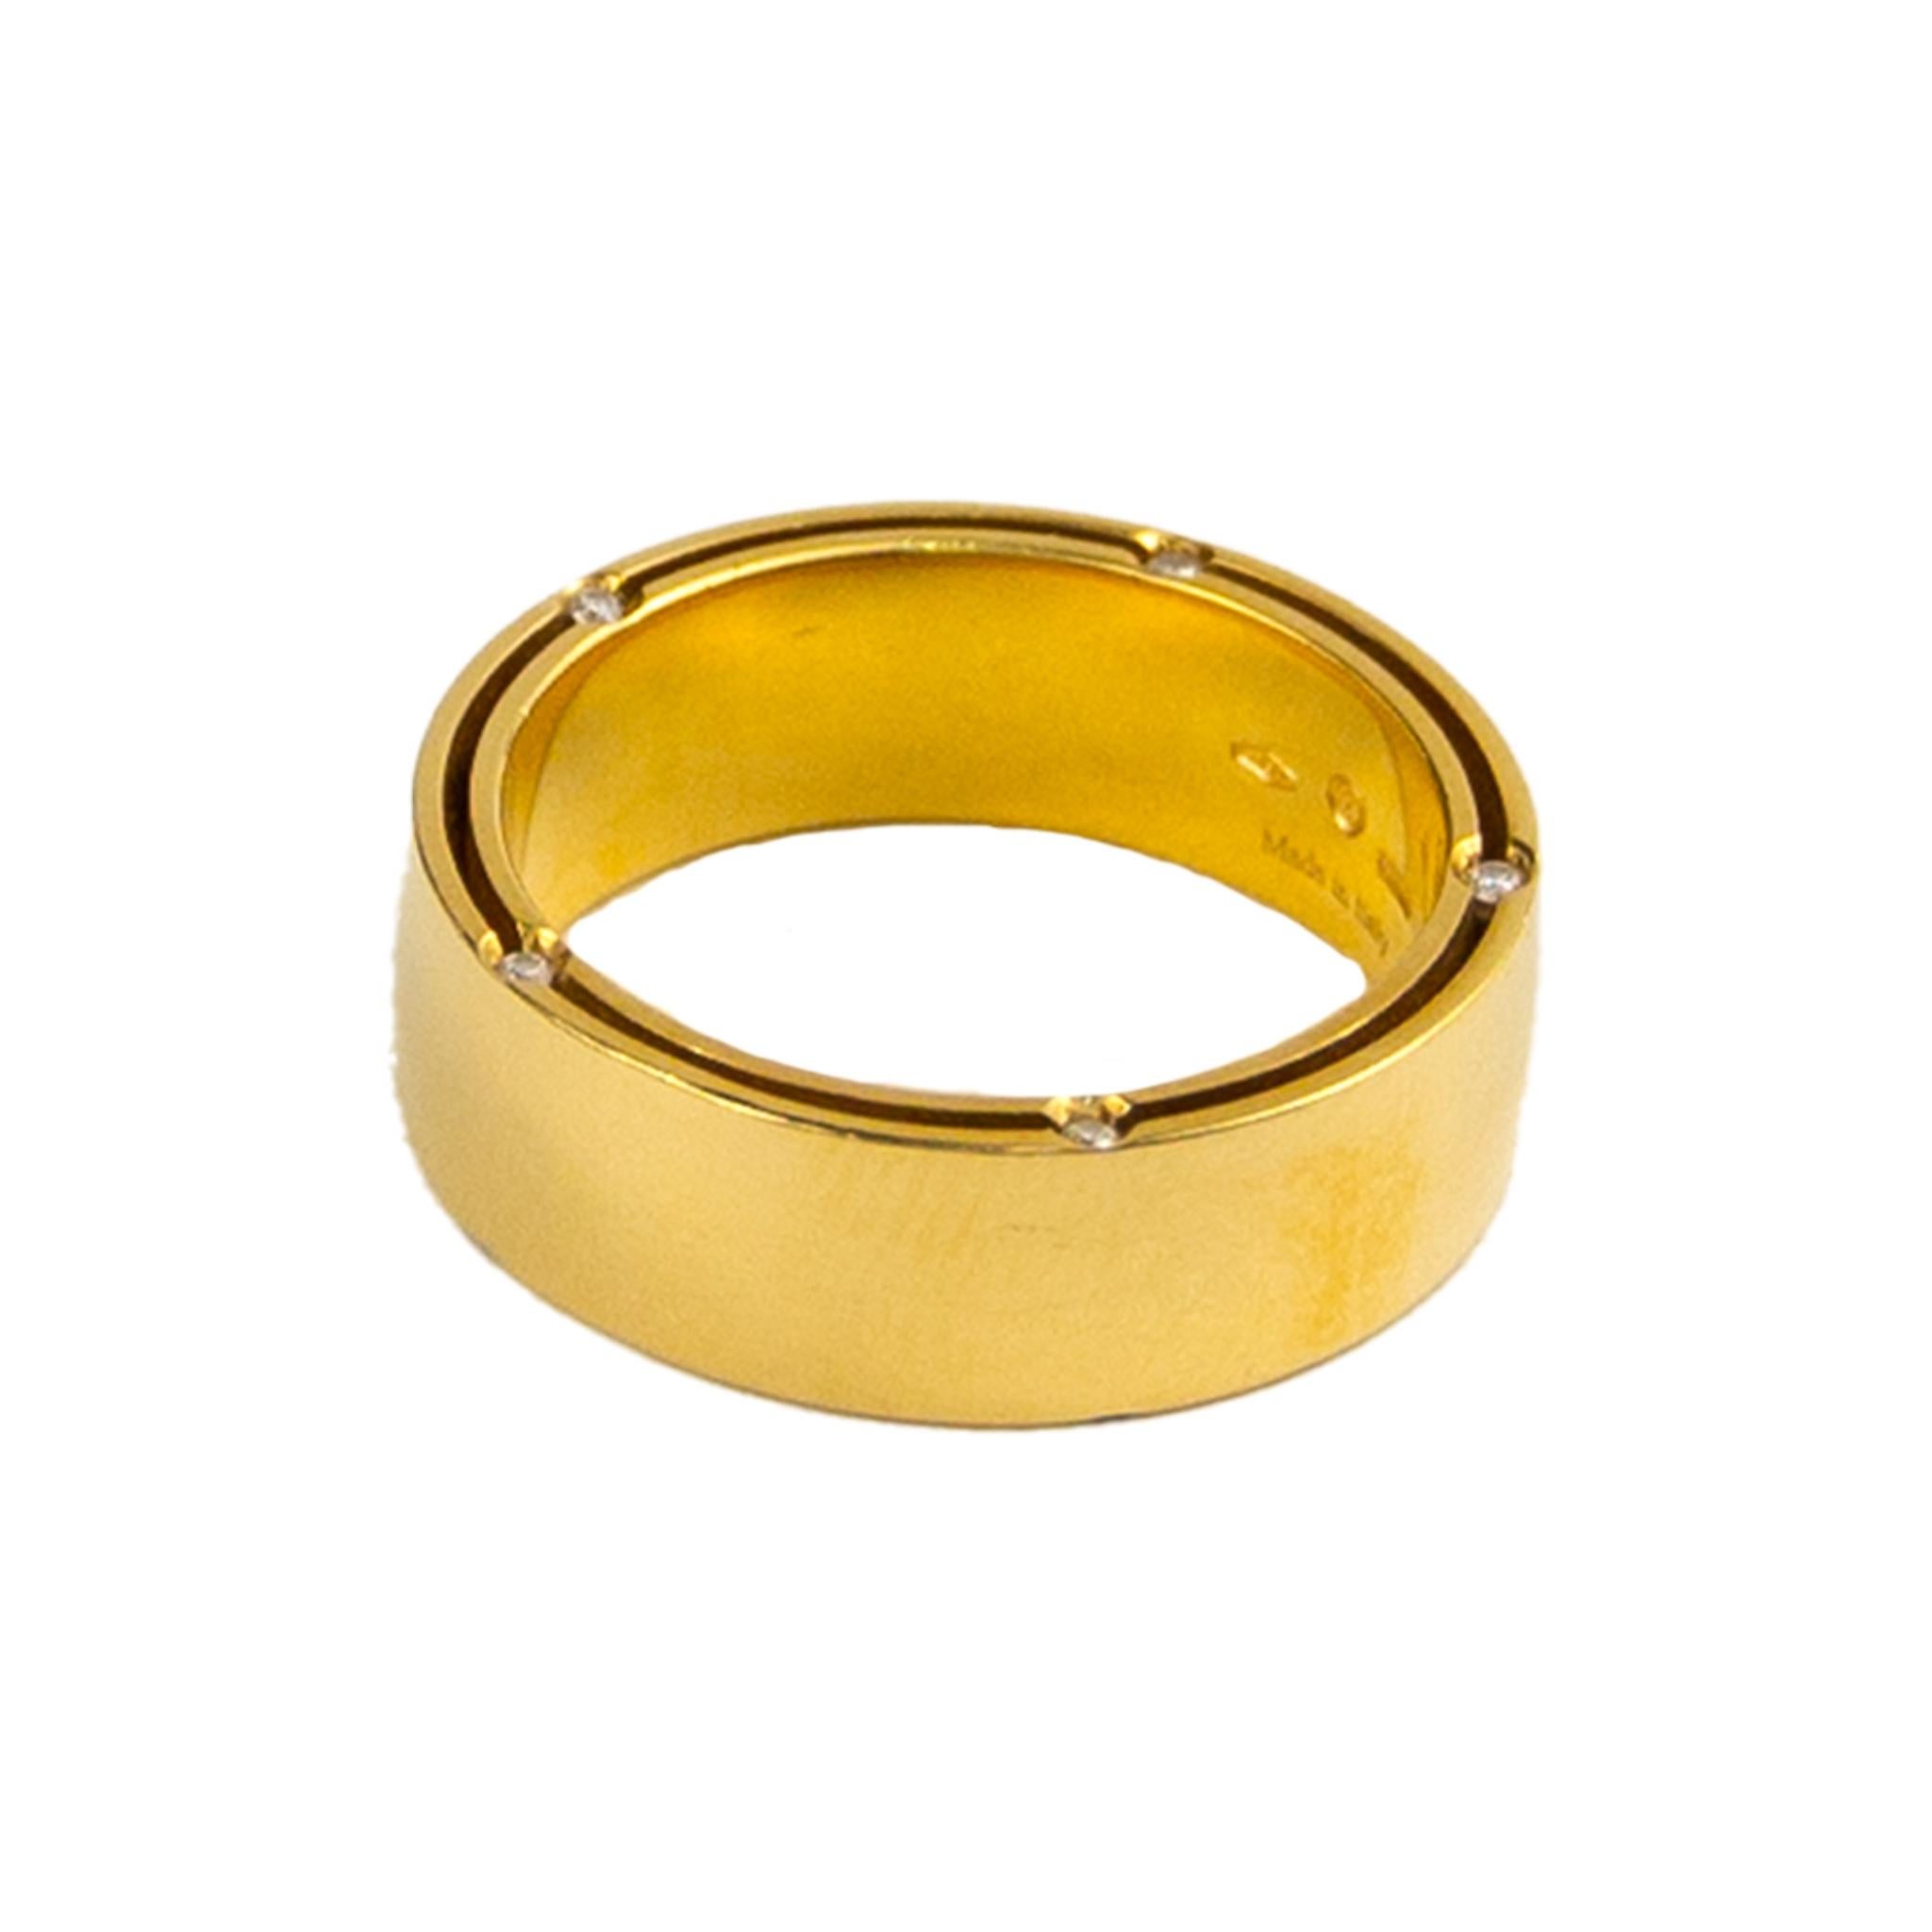 Damiani 18K Yellow Gold Diamond Ring
5 Diamonds
Size: 10